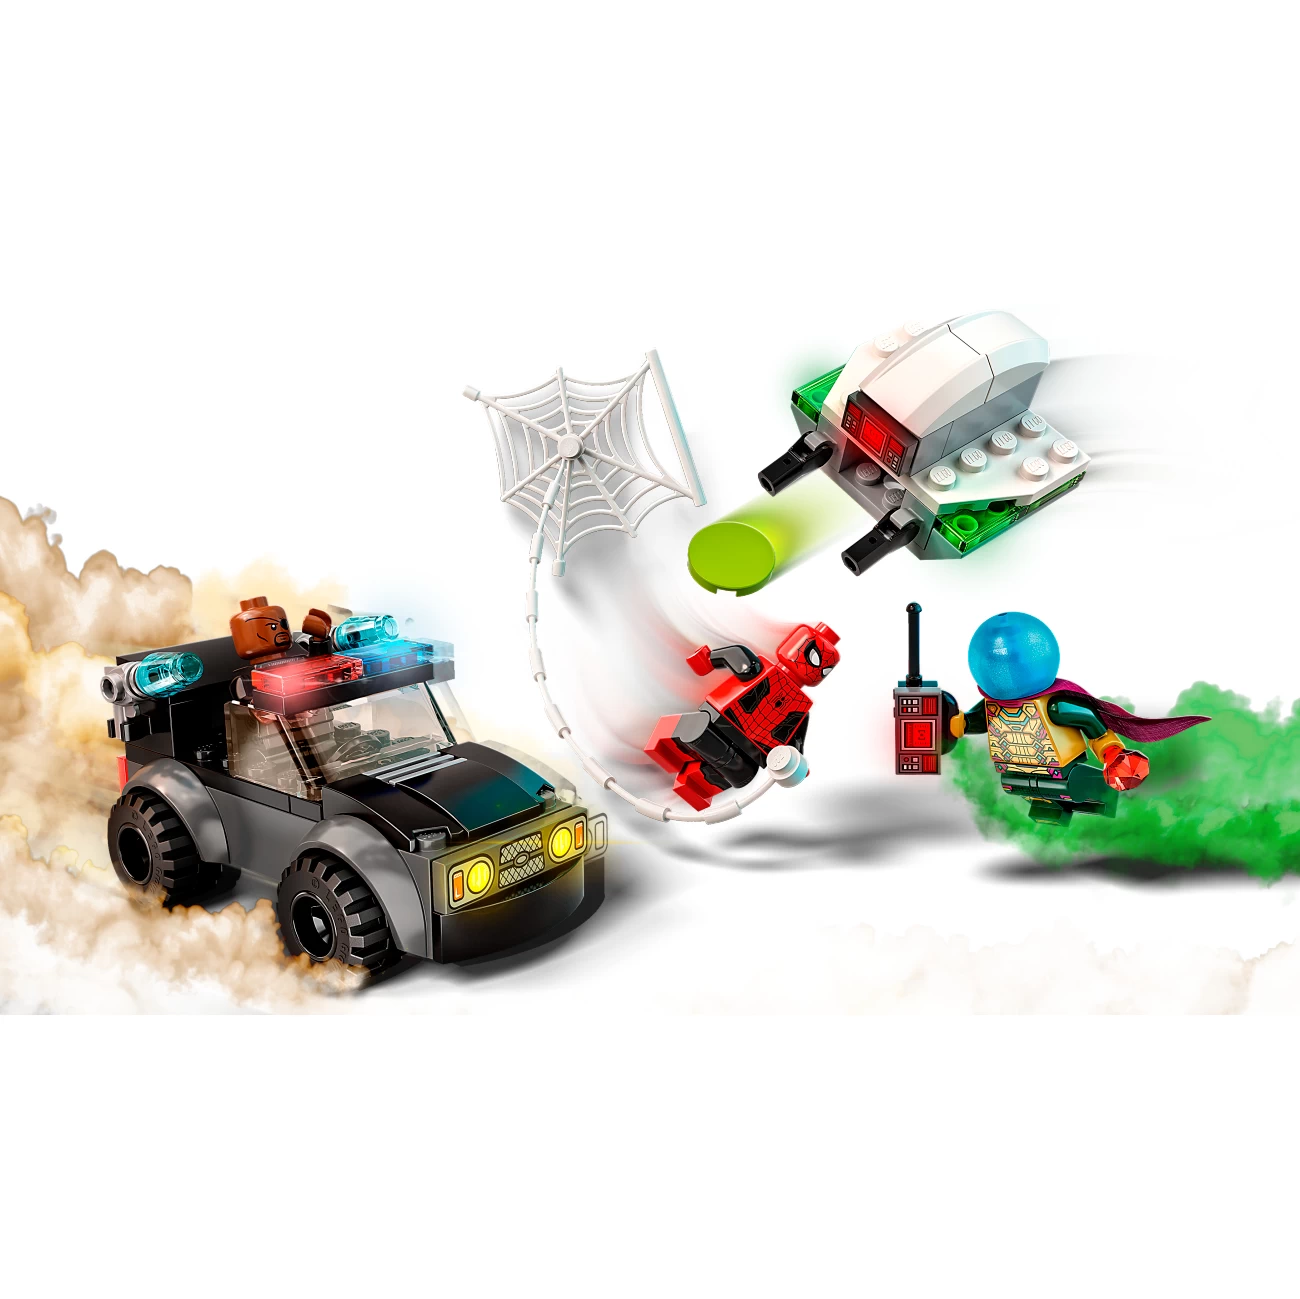 LEGO Marvel Spiderman 76184 - Mysterios Drohnenattacke auf Spider-Man